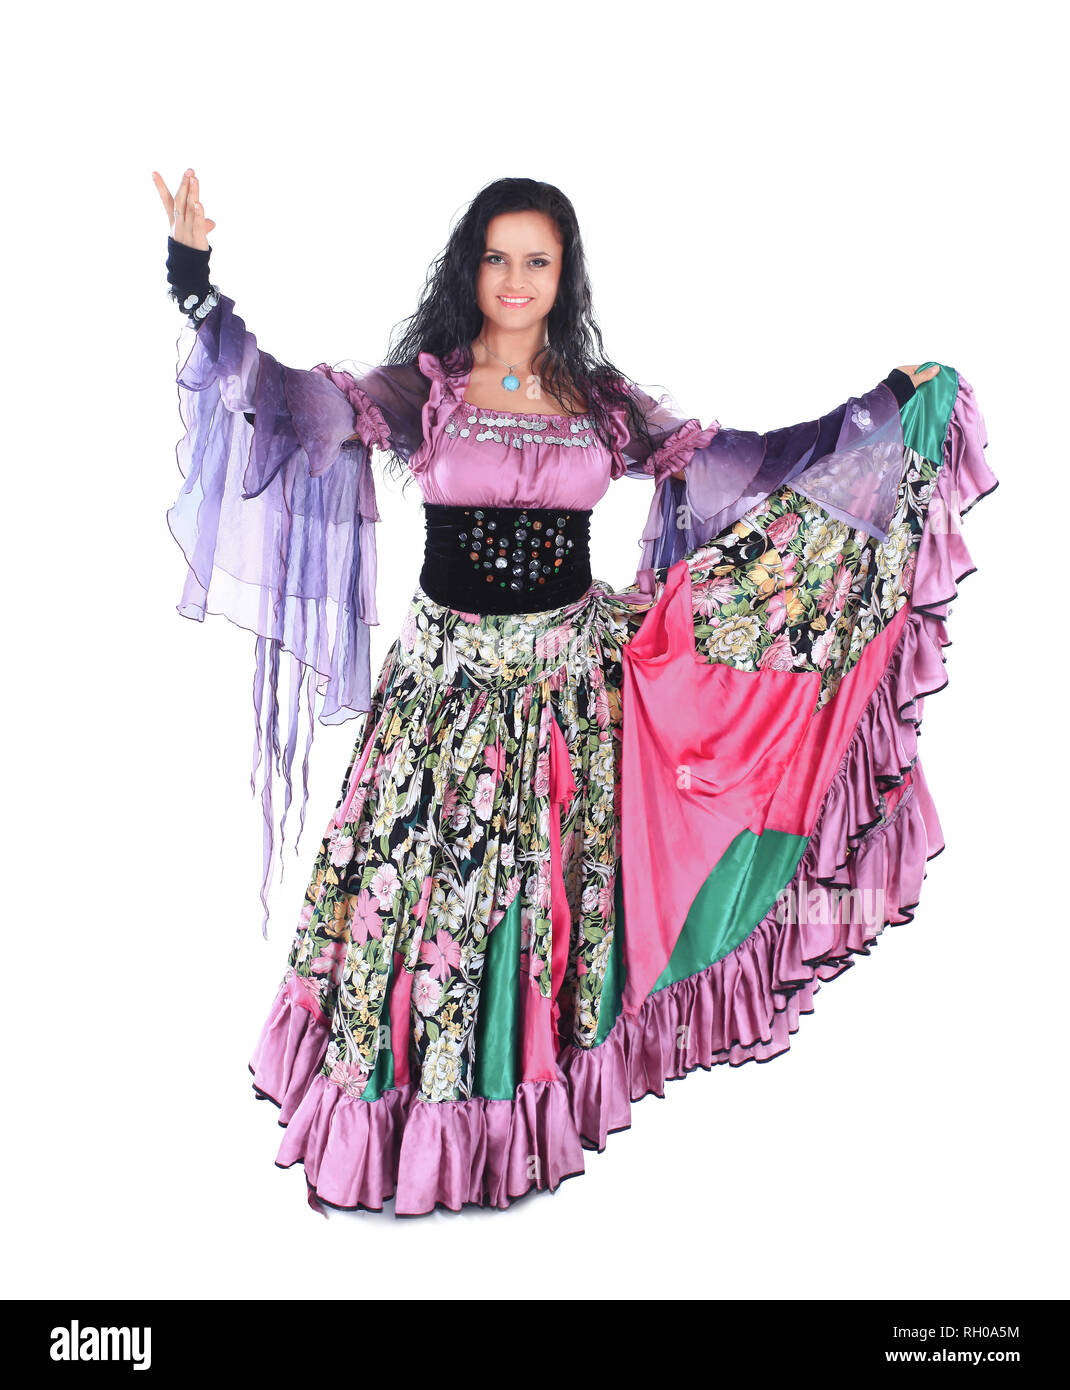 Schöne Frau Tänzer in einer Zigeunerin Kostüm Stockfotografie - Alamy